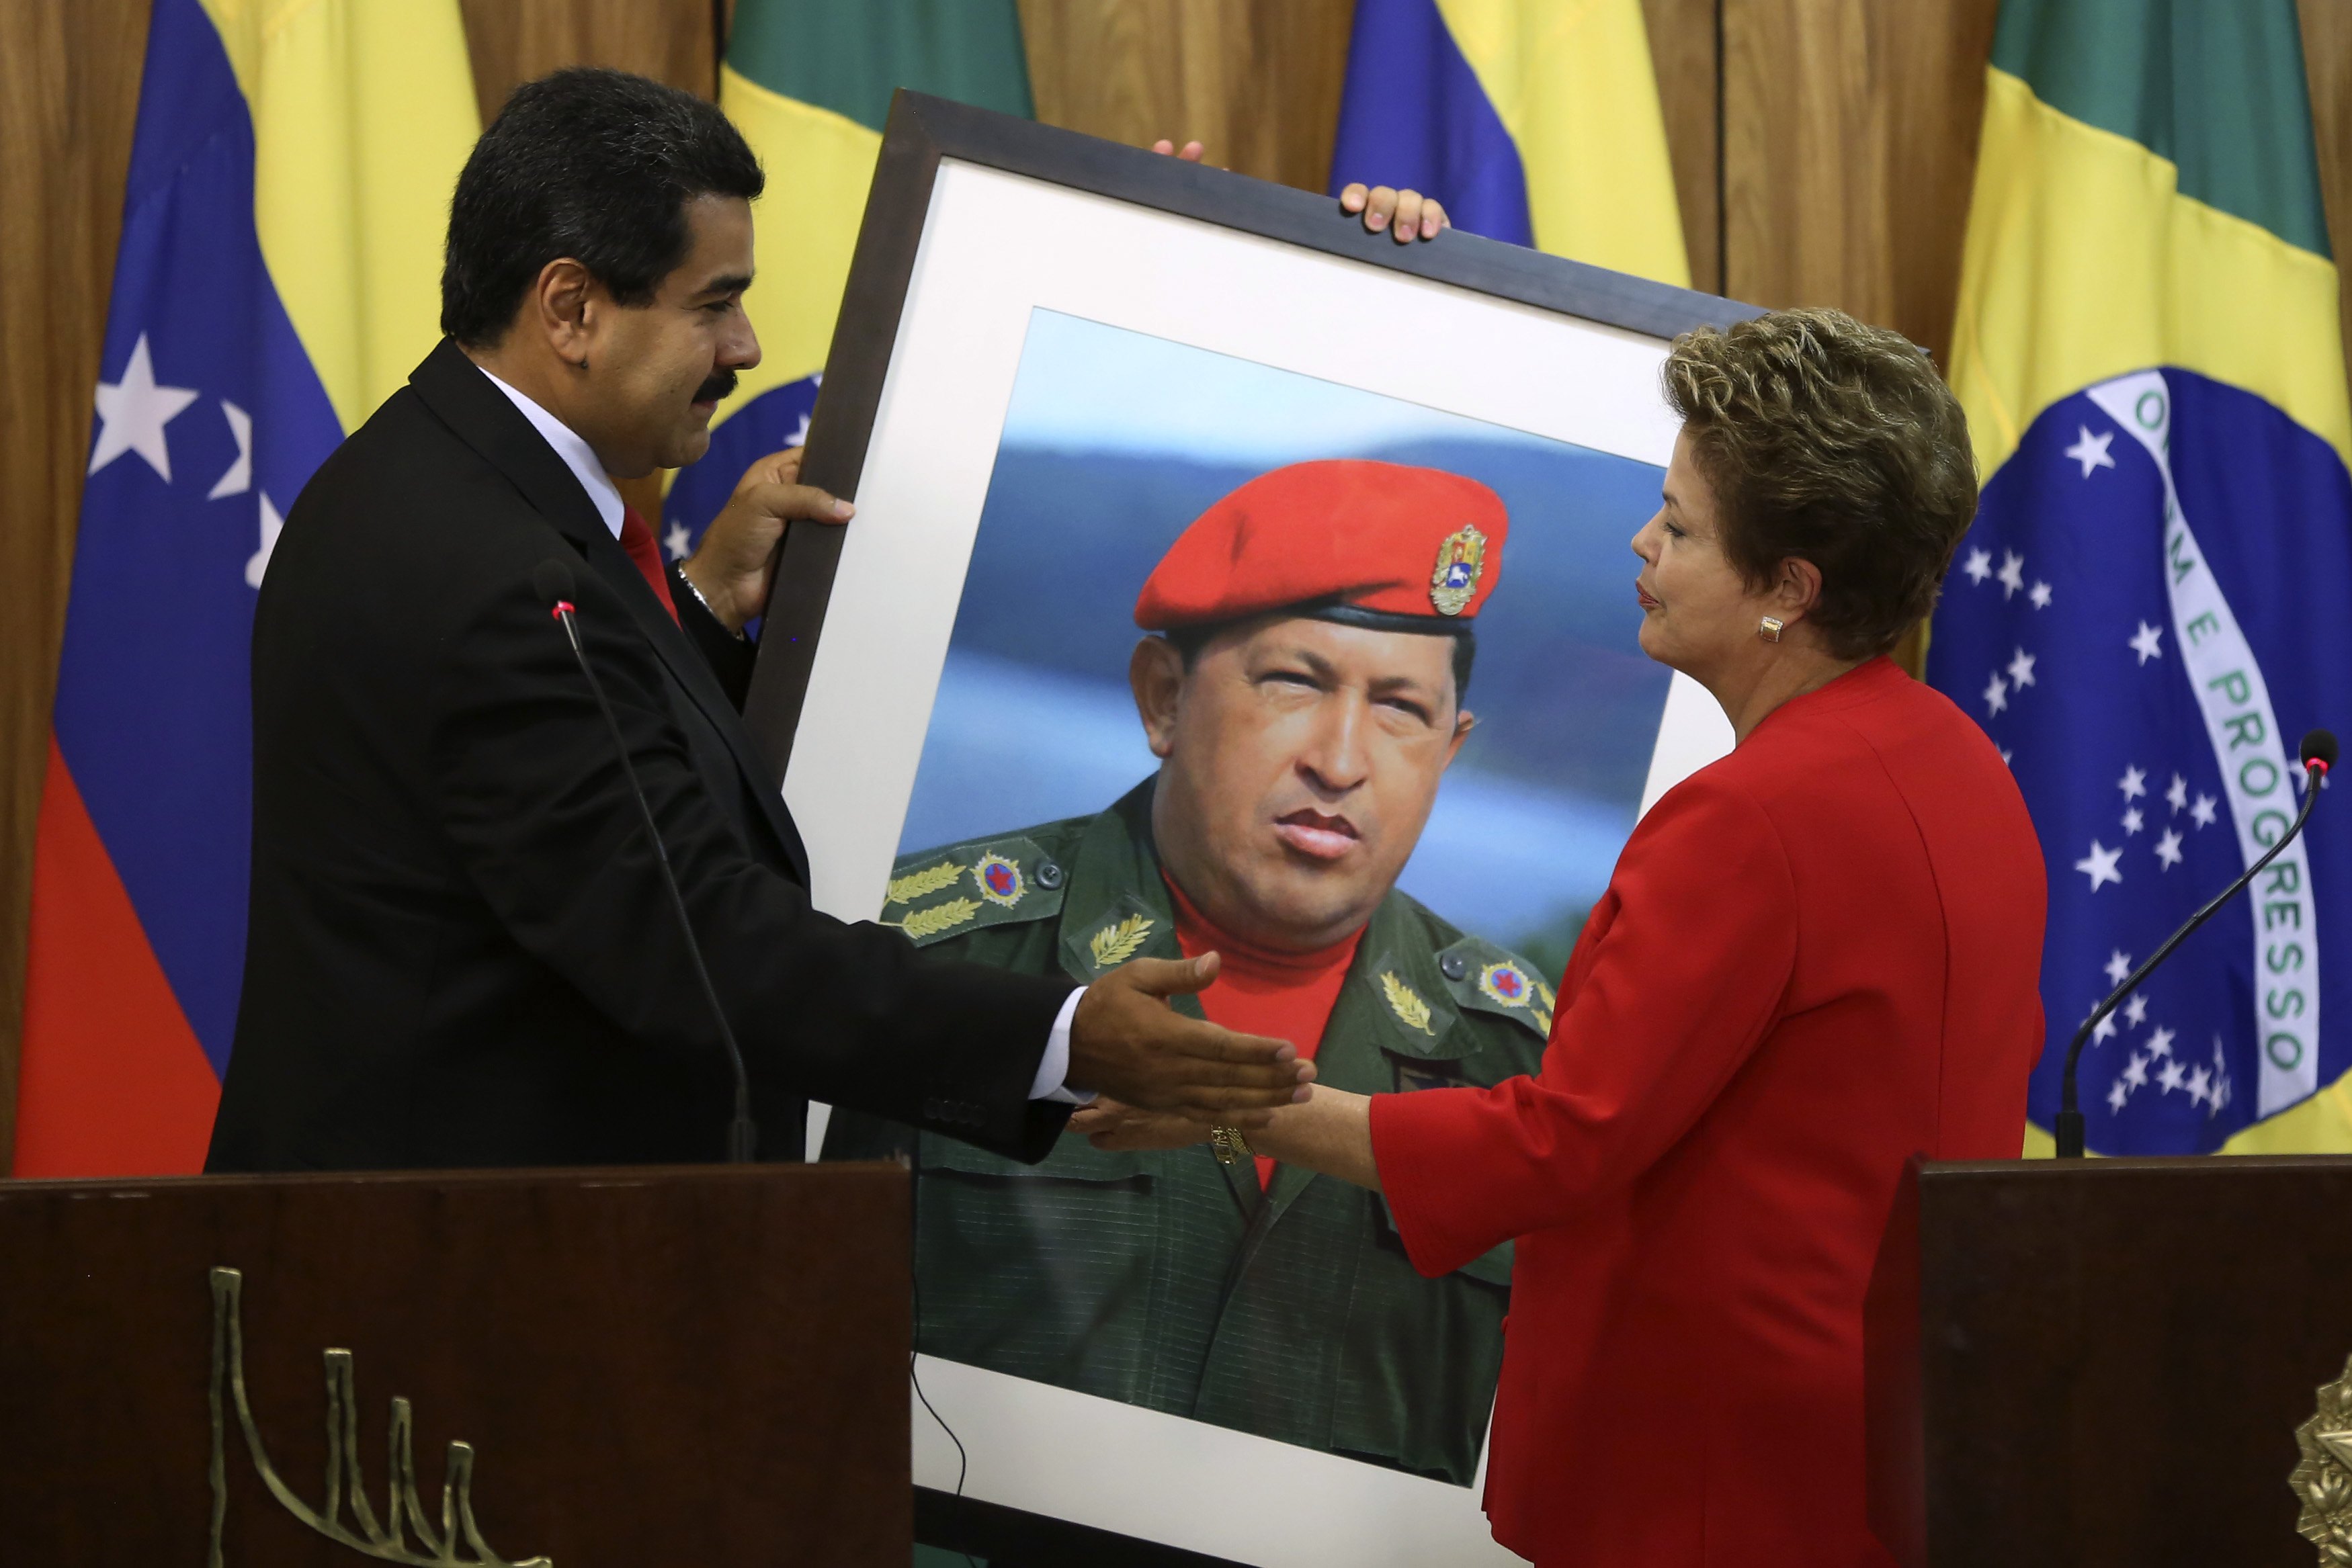 El regalito de Nicolás para Dilma (Fotos)